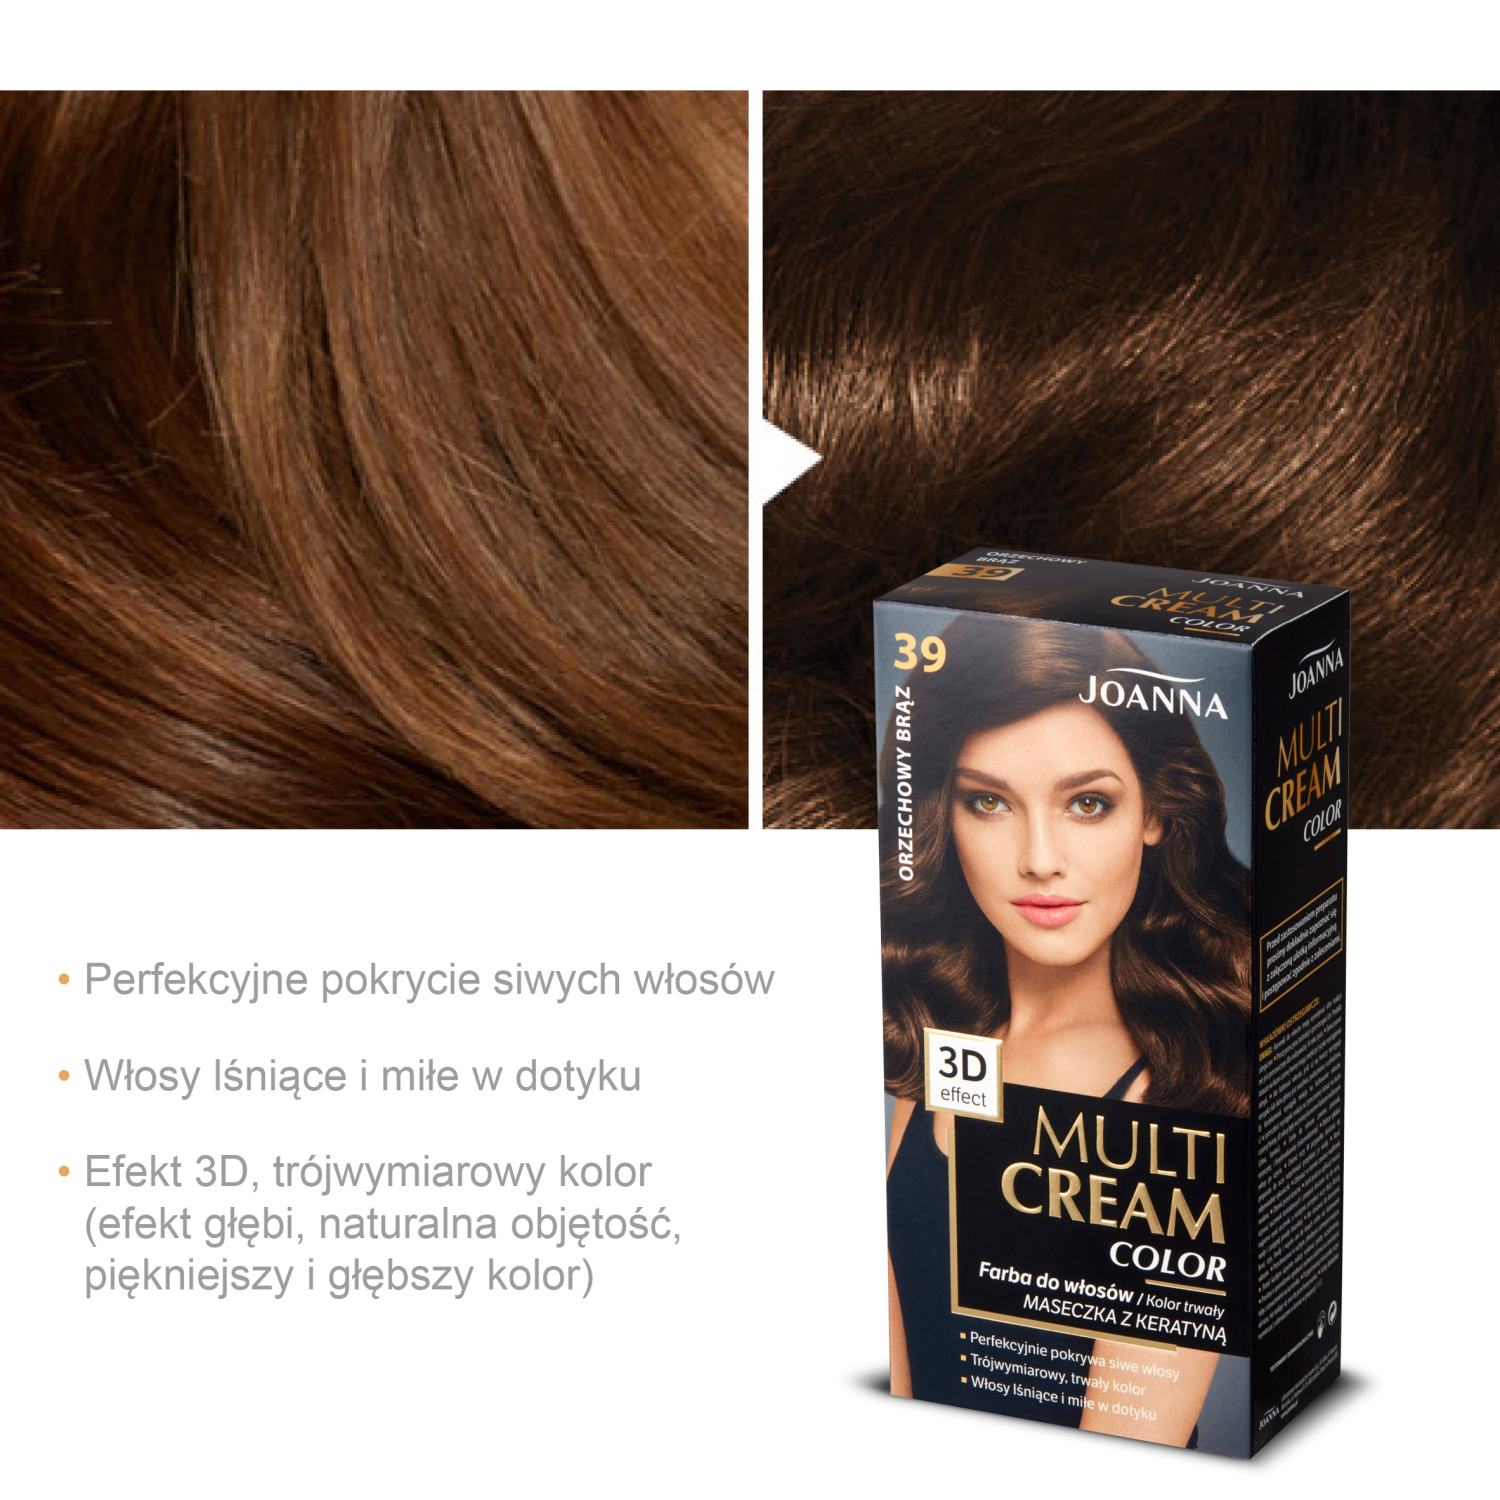 Joanna Multi Cream Color краска для волос 39 ореховый коричневый, 1упаковка – купить по выгодным ценам с доставкой из-за рубежа через сервис«CDEK.Shopping»